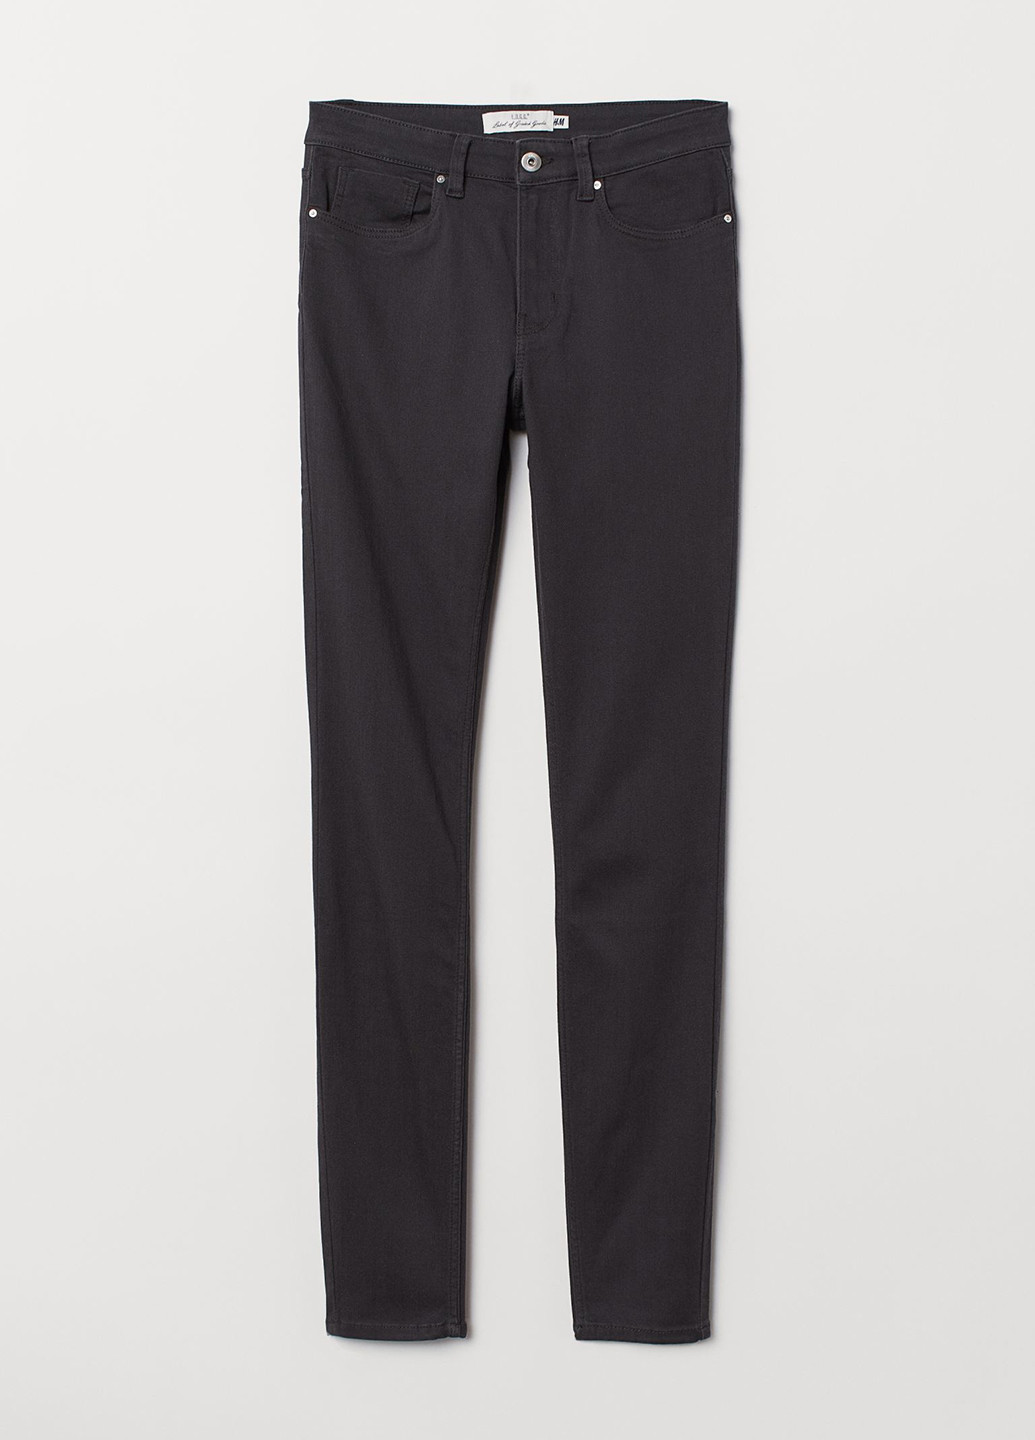 Темно-серые джинсовые демисезонные зауженные брюки H&M